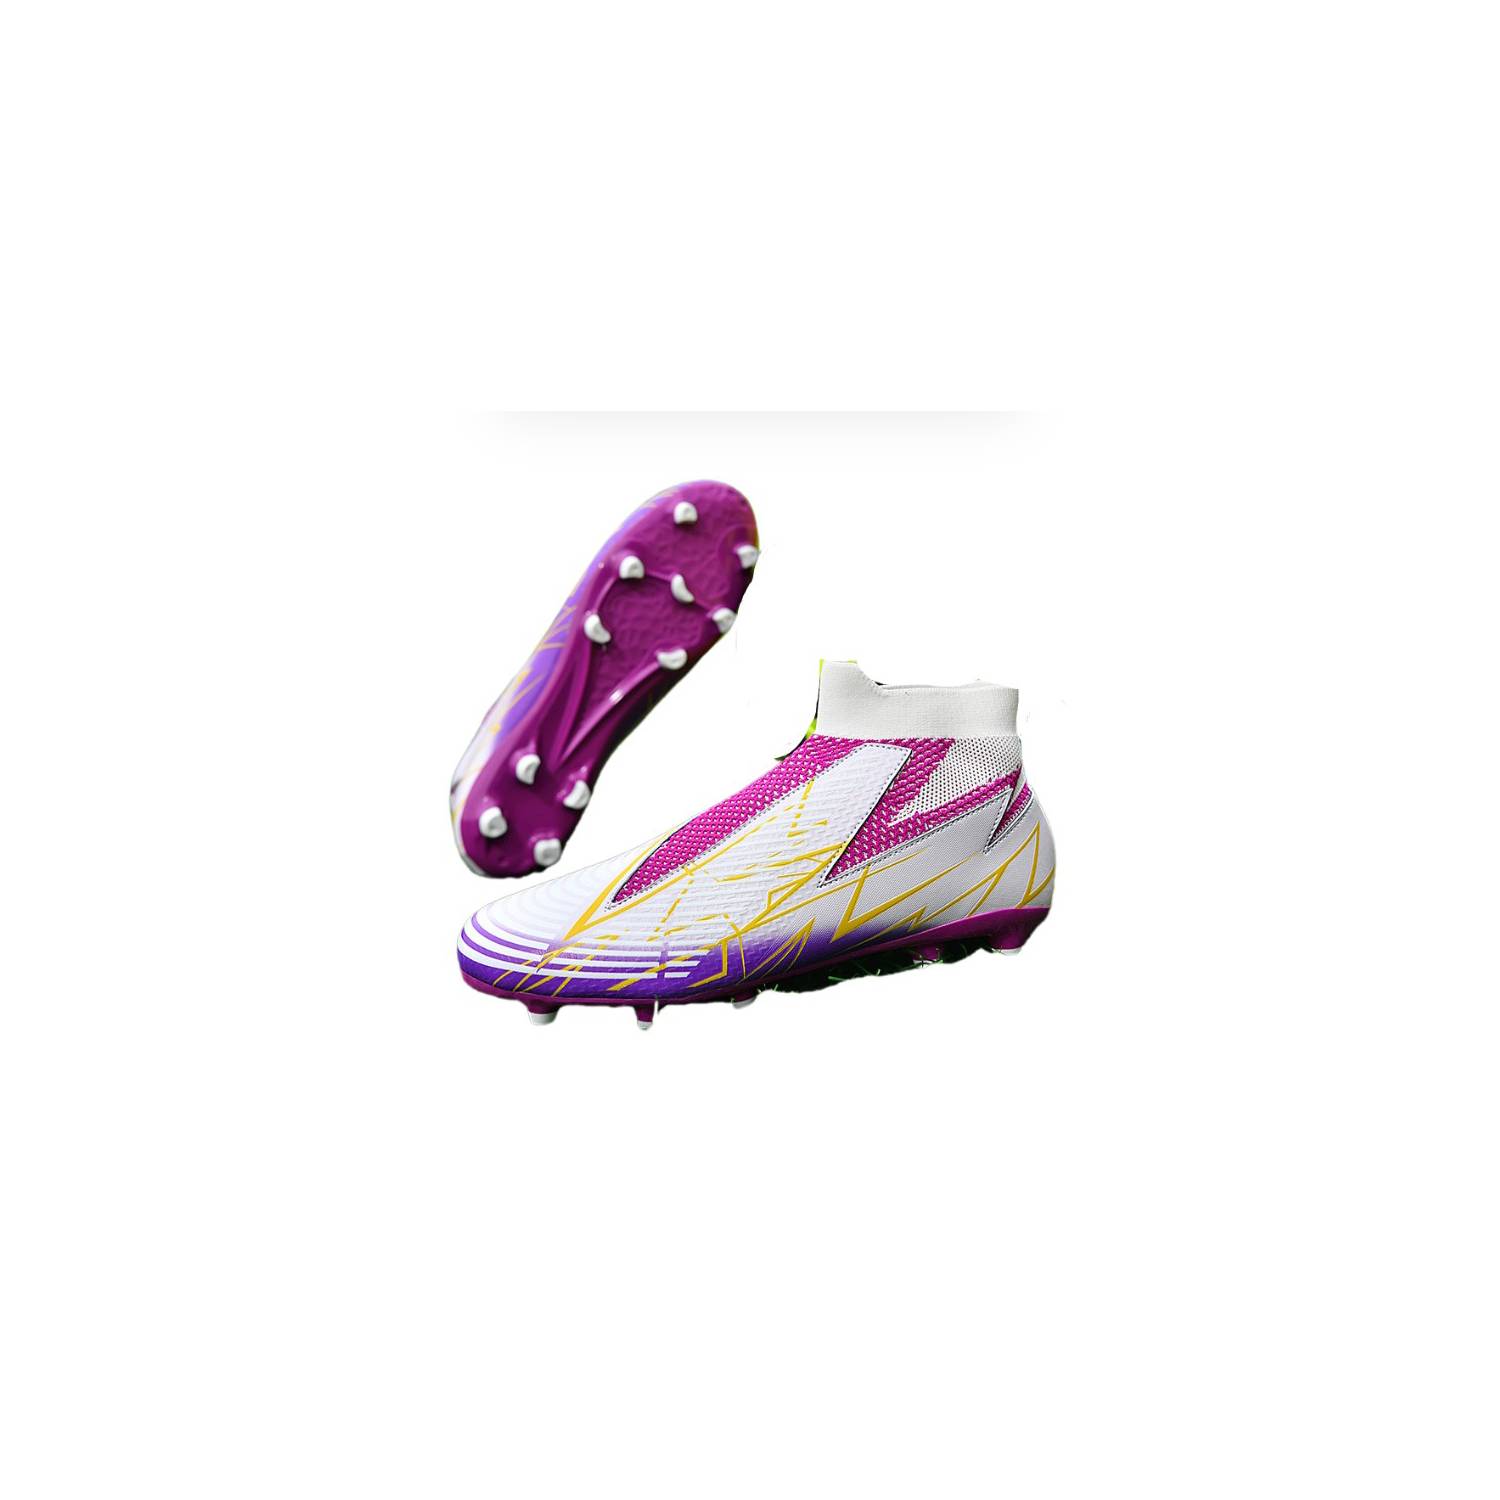 BLWOENS Zapatos de futbol AG suela de goma para hombre y Mujeres-Violeta.